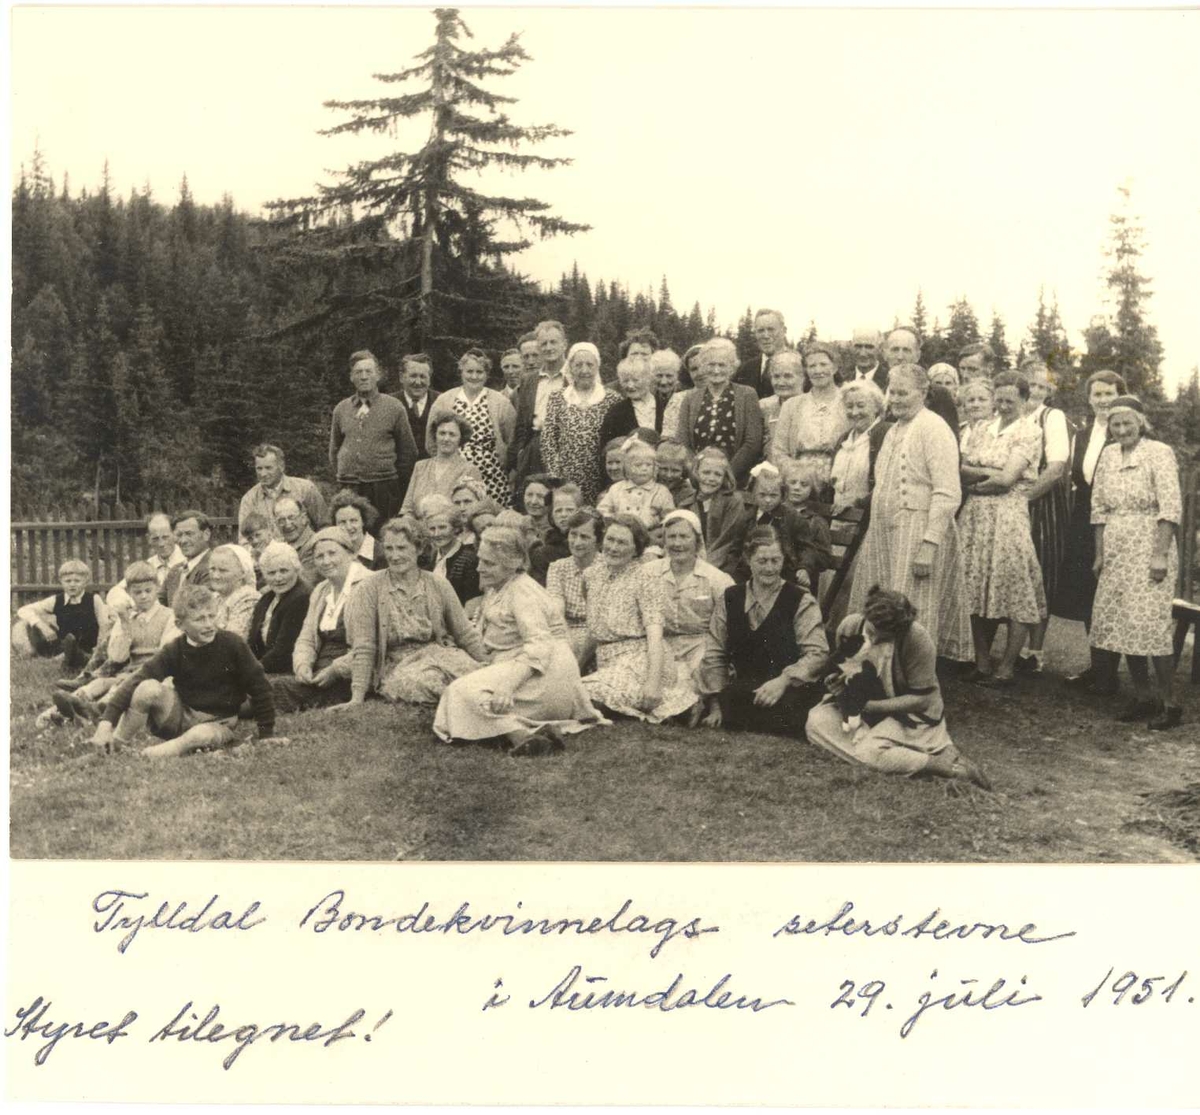 Tylldalen Bondekvinnelag seterstevne 1951
vedlegg med nr for identifisering